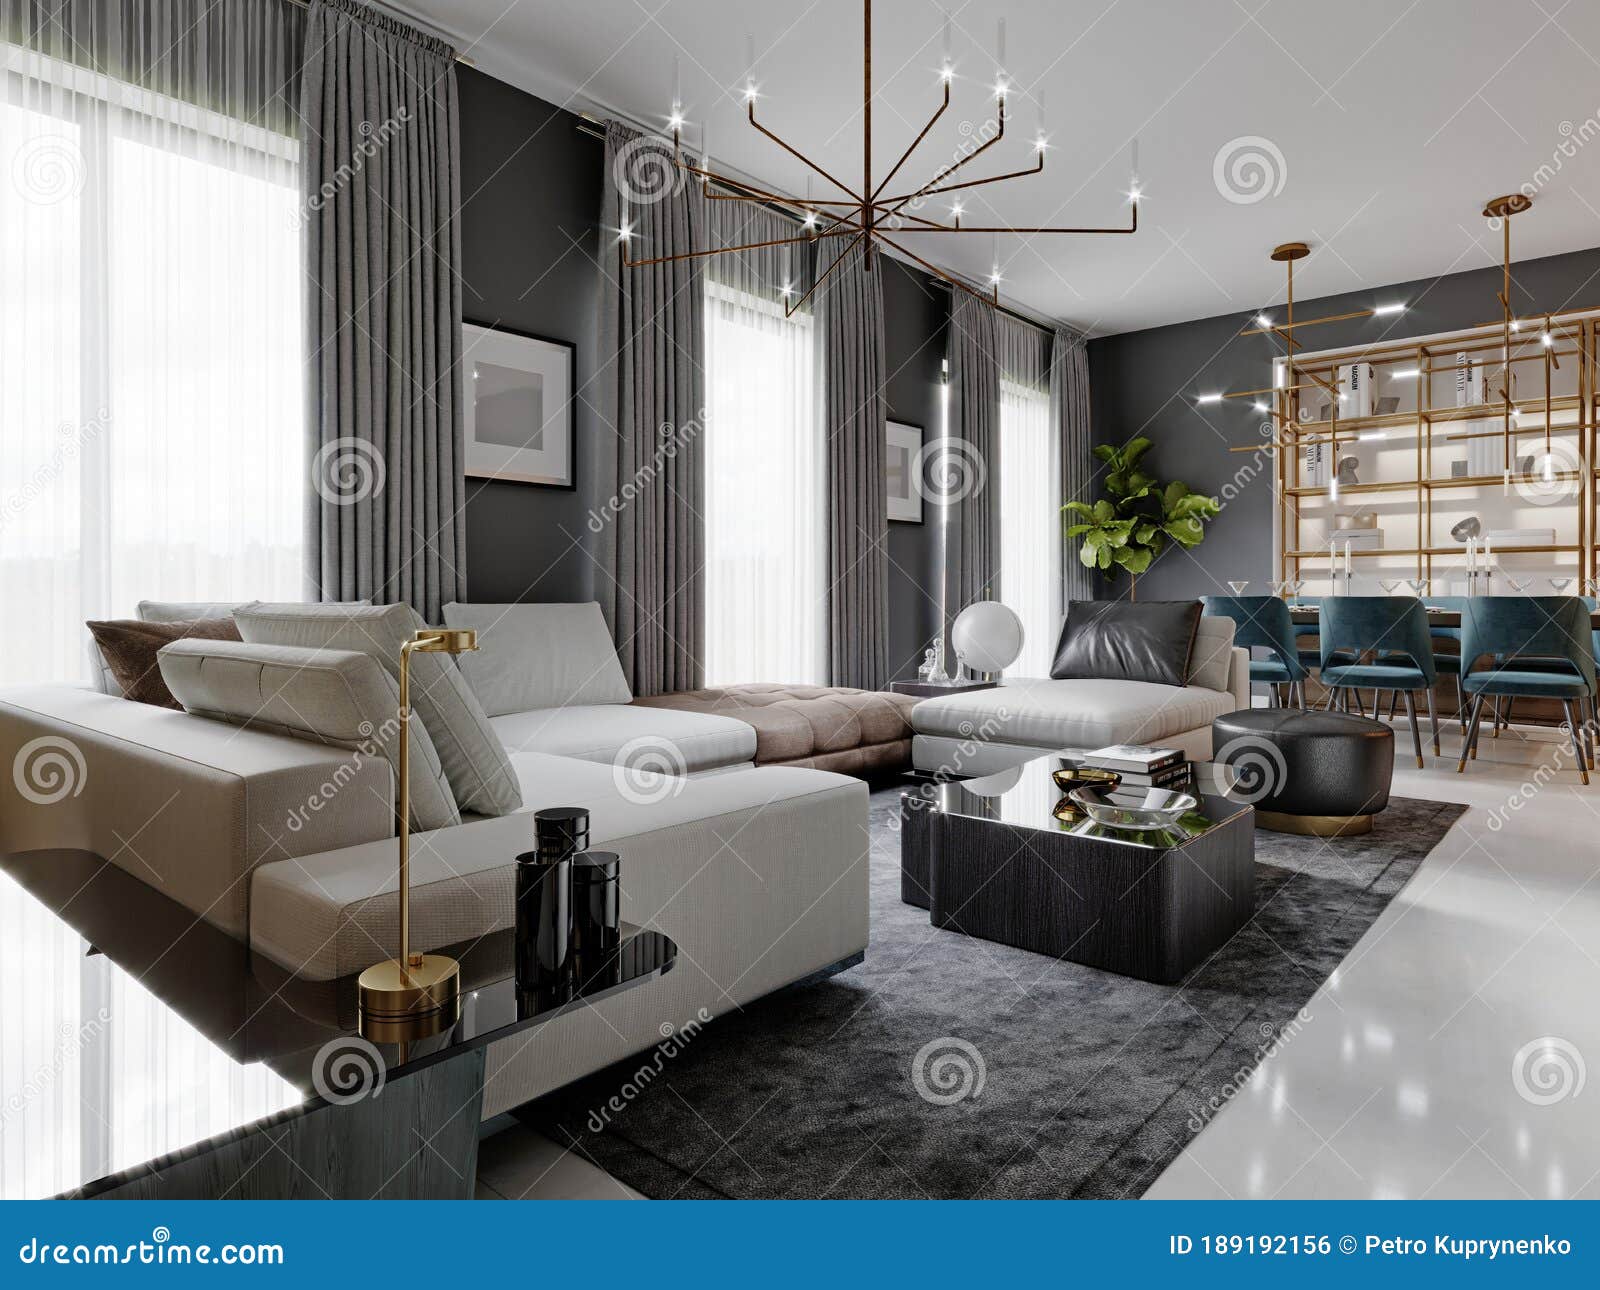 Amplio salón con un gran sofá esquinero blanco y mueble de tv, zona de  comedor con mesa de comedor. paredes grises y grandes ventanales.  representación 3d.